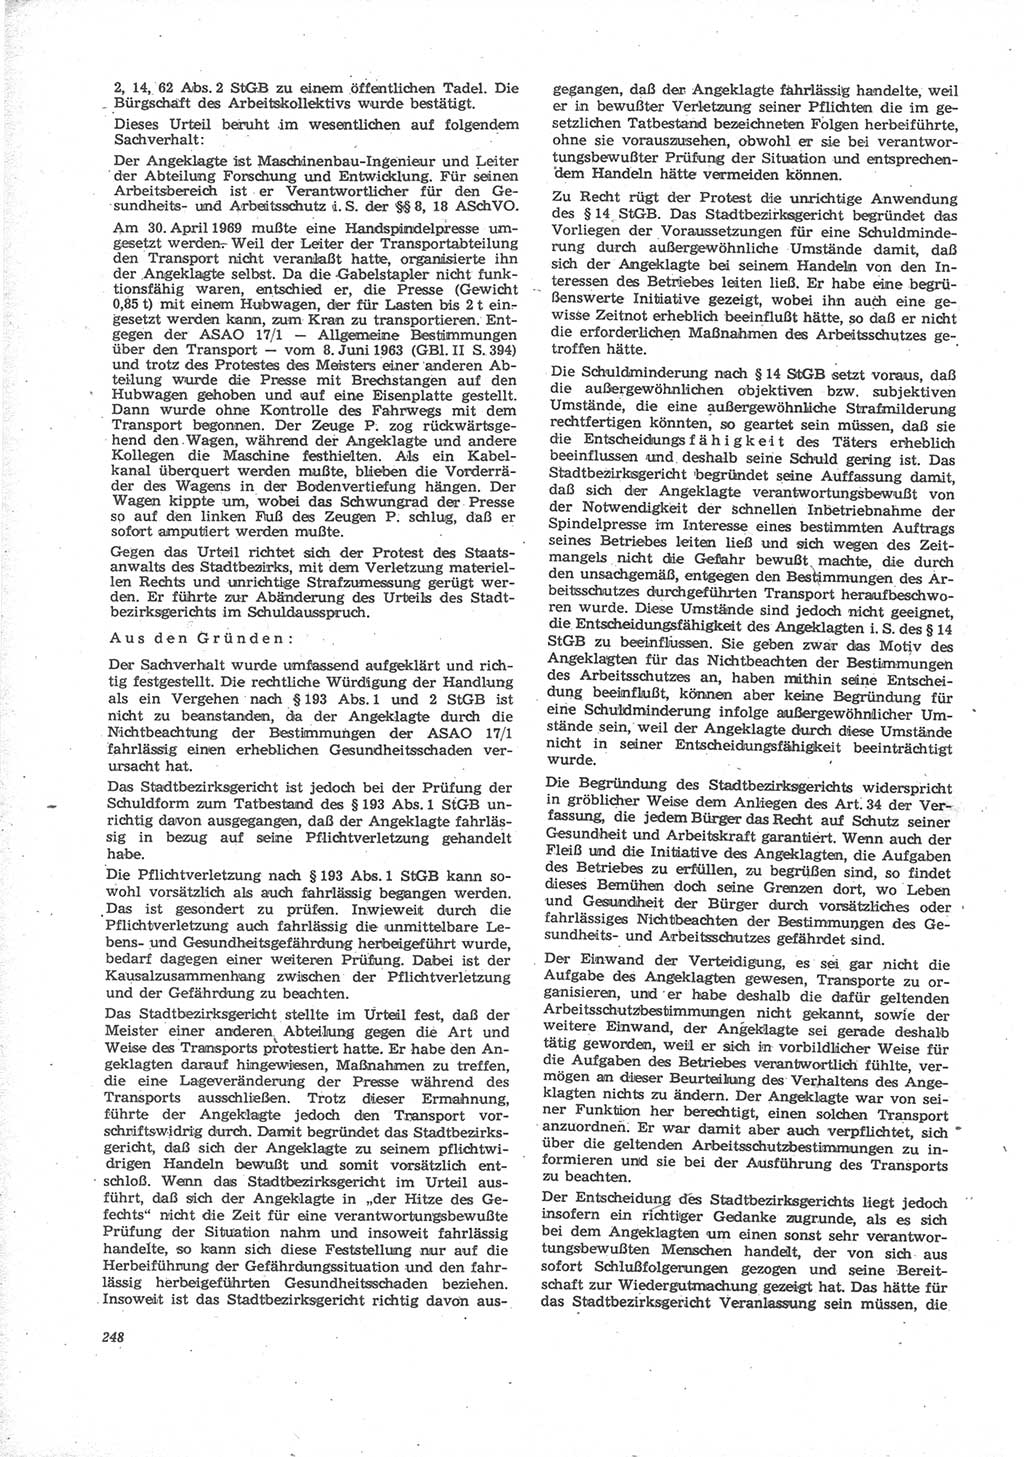 Neue Justiz (NJ), Zeitschrift für Recht und Rechtswissenschaft [Deutsche Demokratische Republik (DDR)], 24. Jahrgang 1970, Seite 248 (NJ DDR 1970, S. 248)